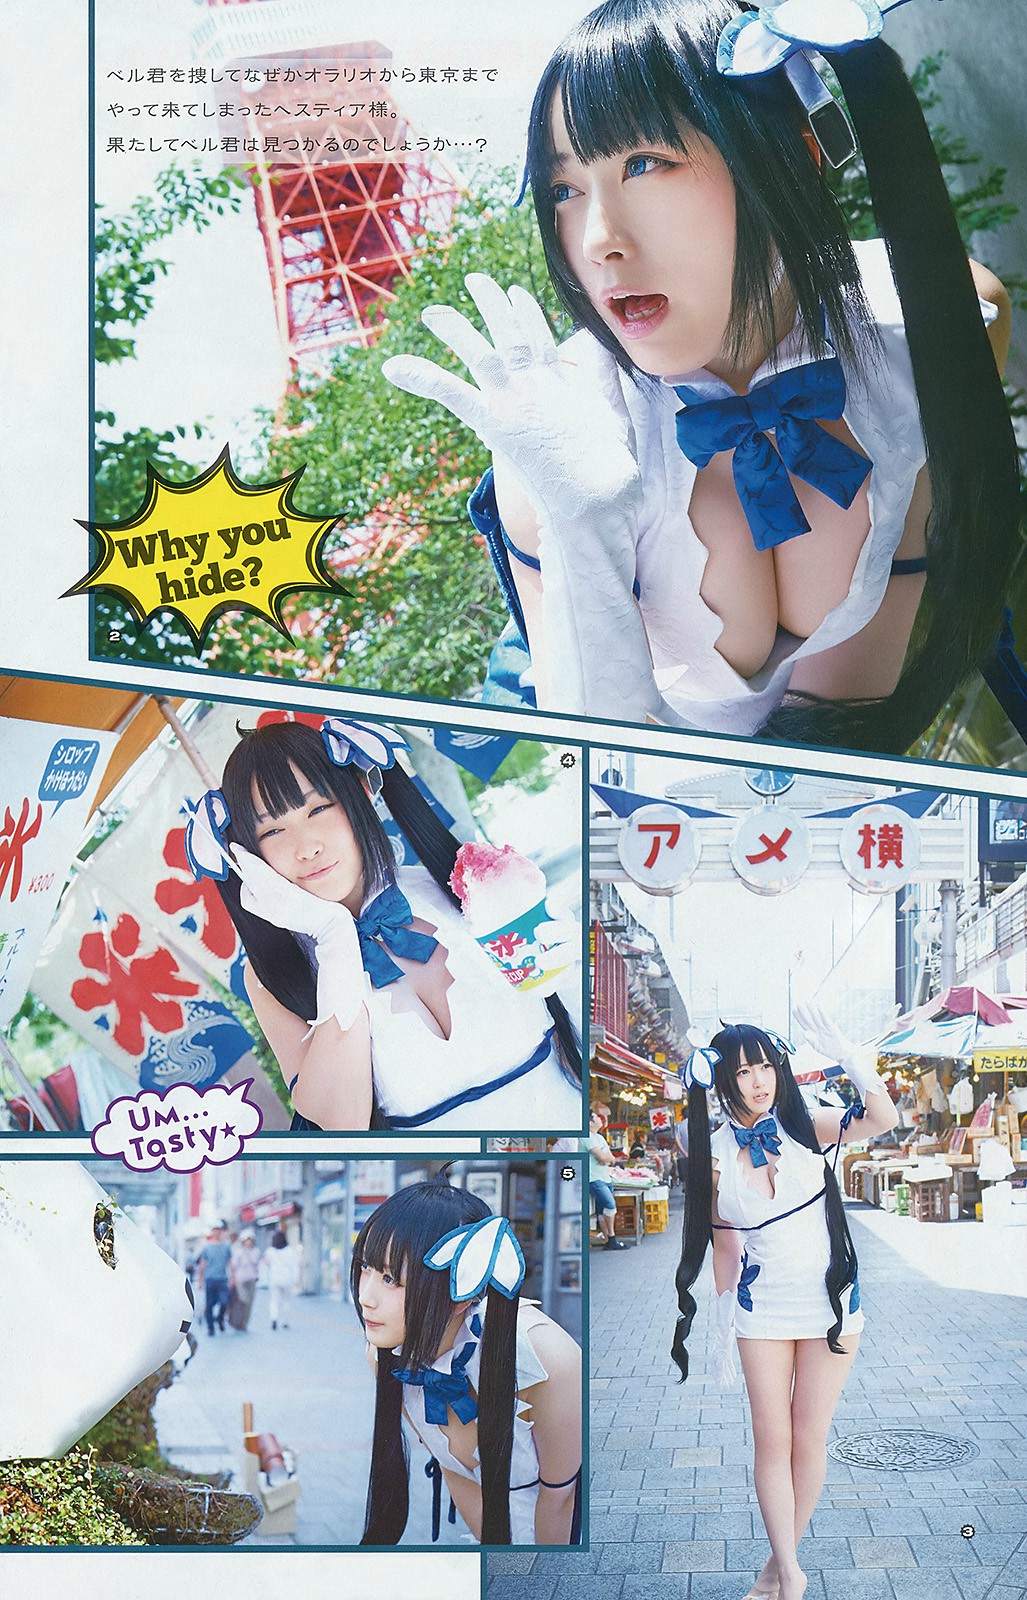 日本最可爱Cosplayer御伽ねこむ杂志写真 ：还原度极高的赫斯缇雅乳带 [P1]